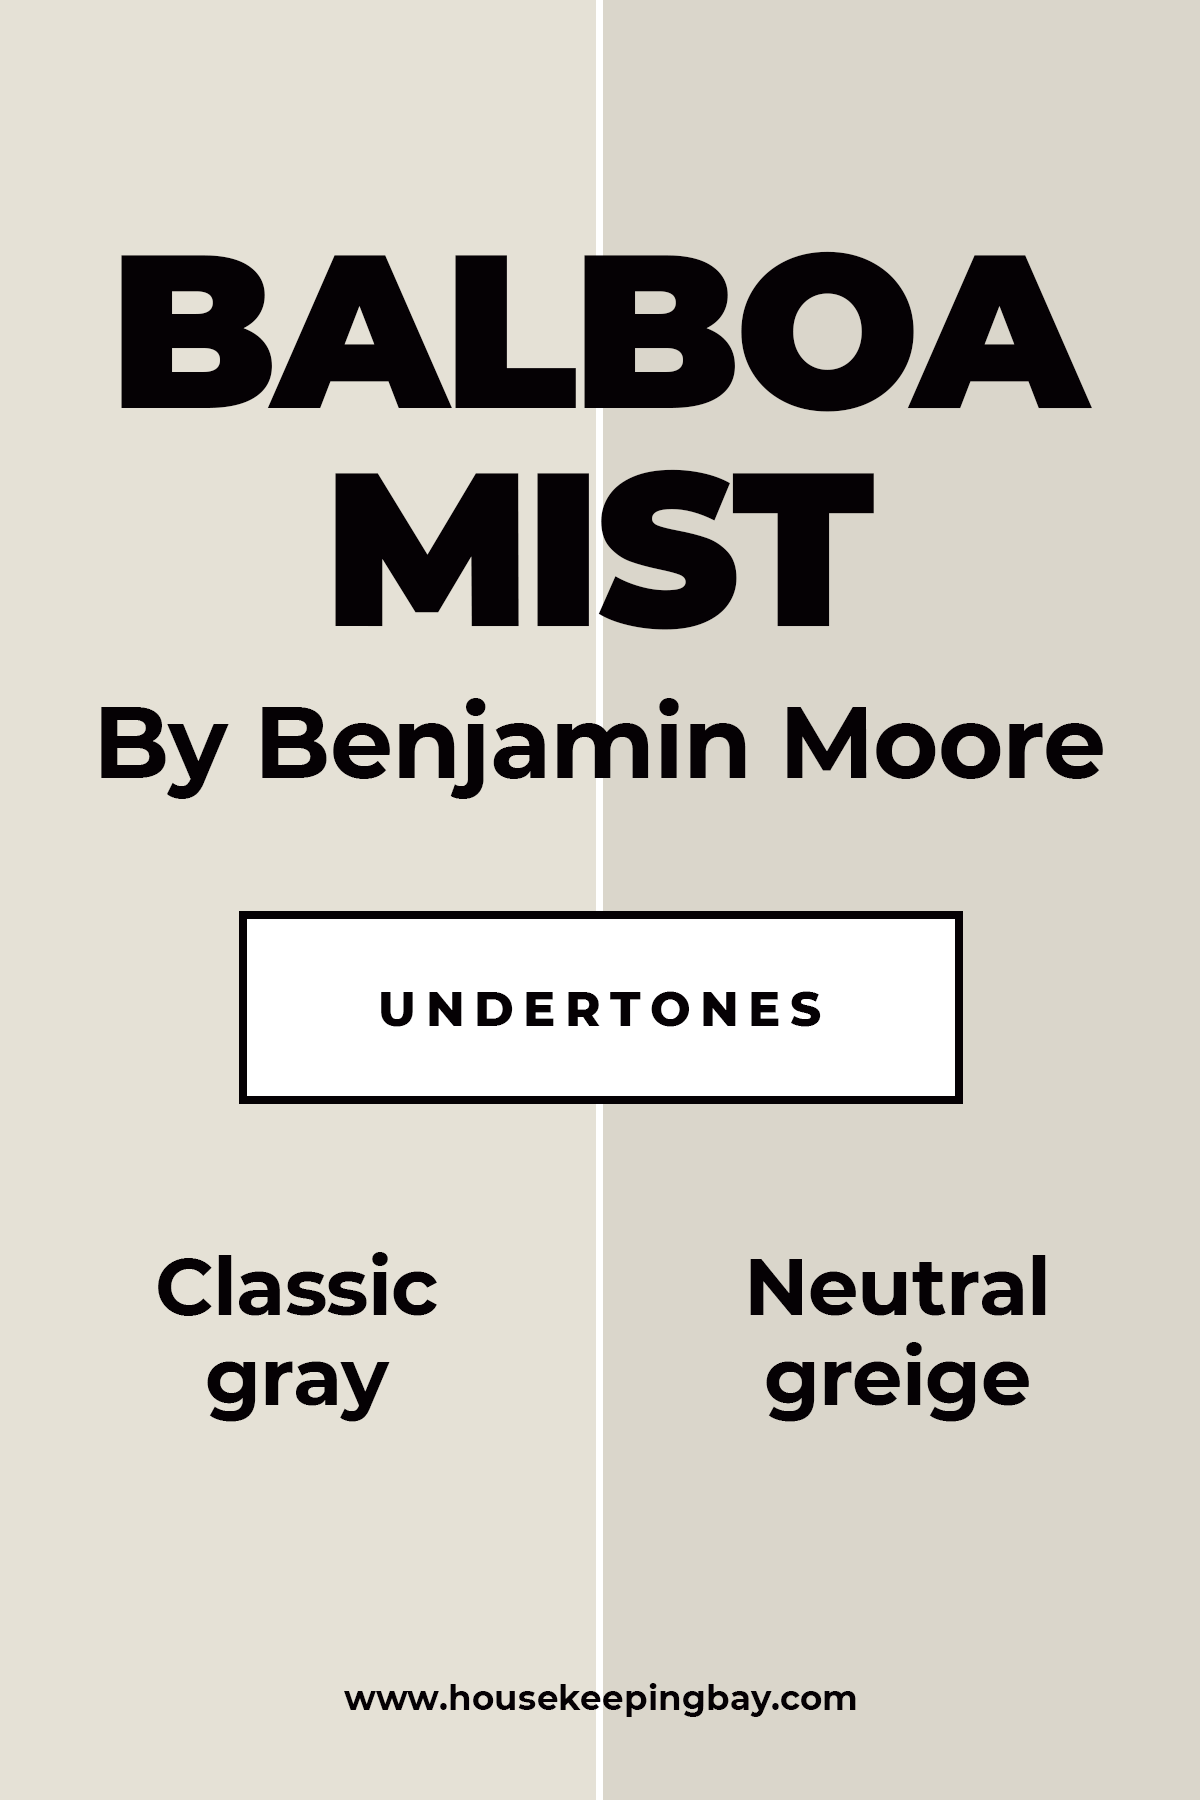 Balboa Mist By Benjamin Moore Undertones